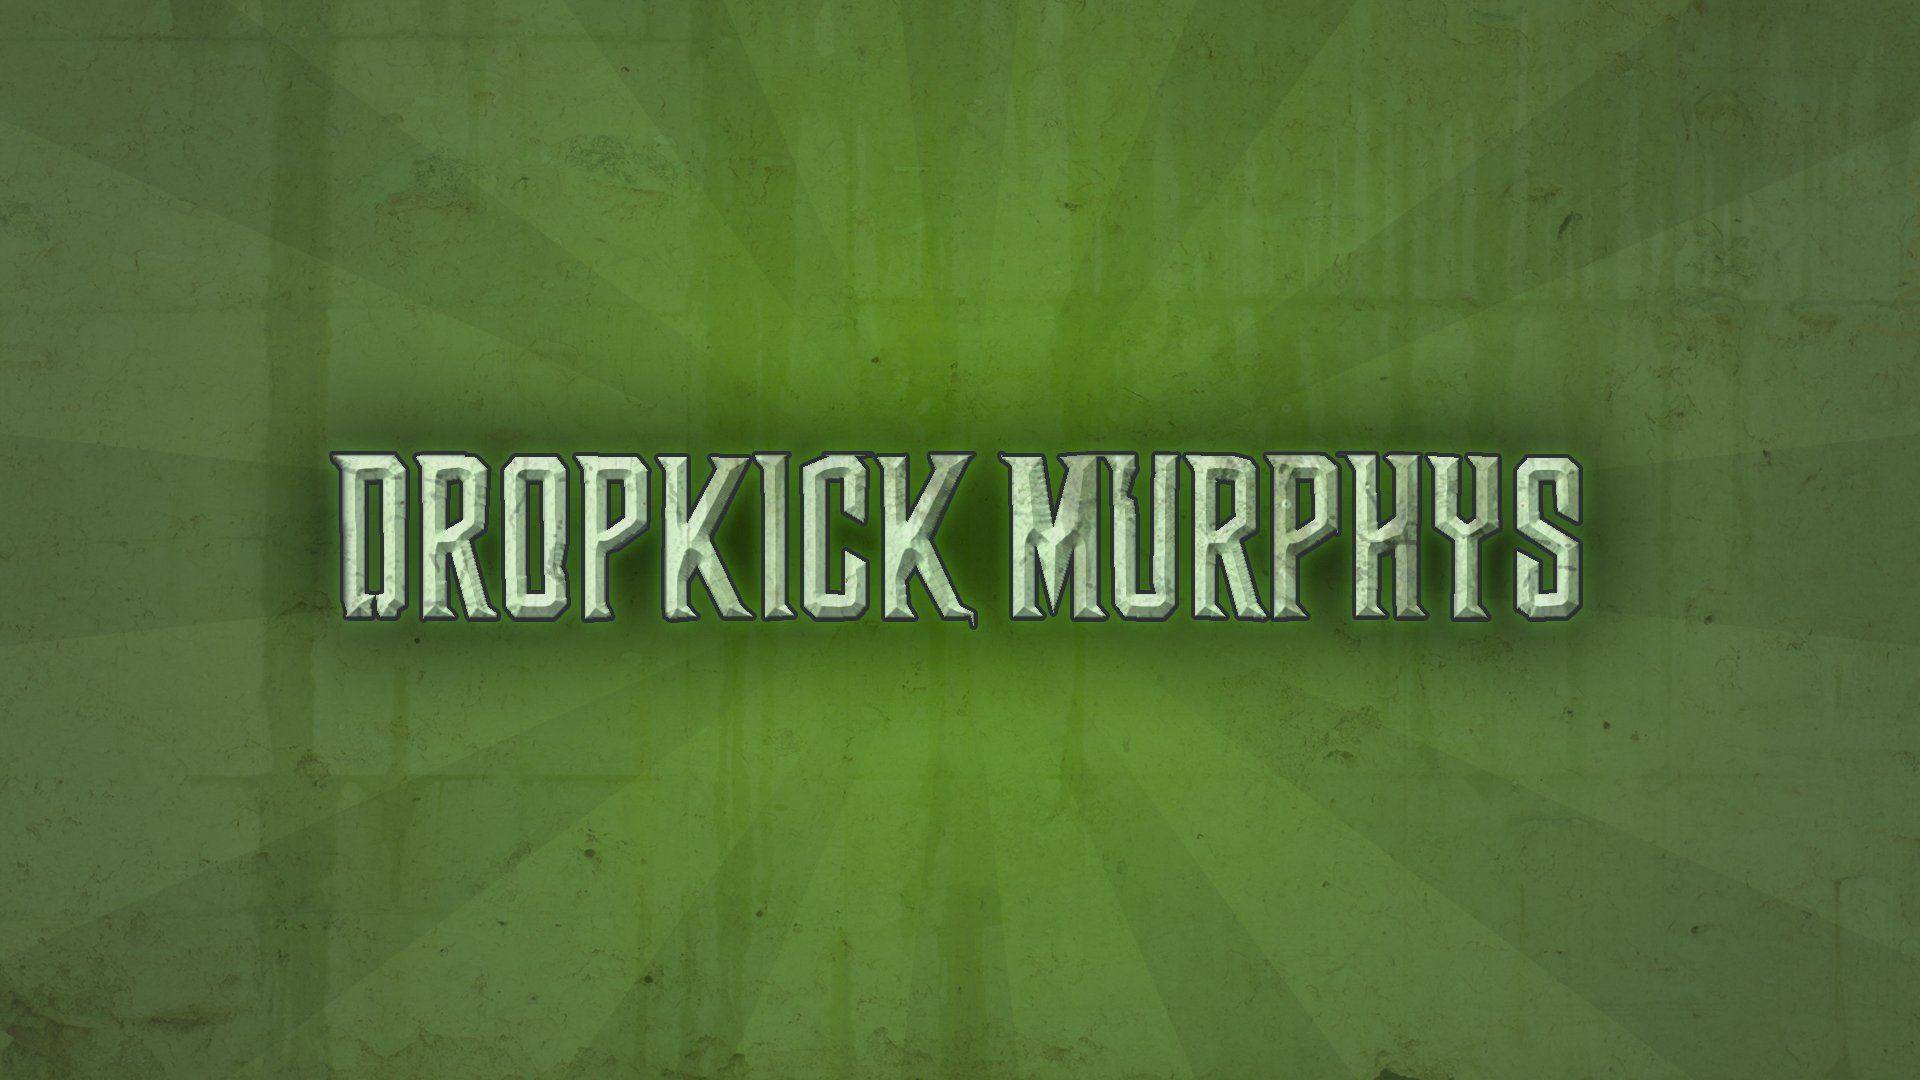 Dropkick Murphys HD Wallpaper and Background Image